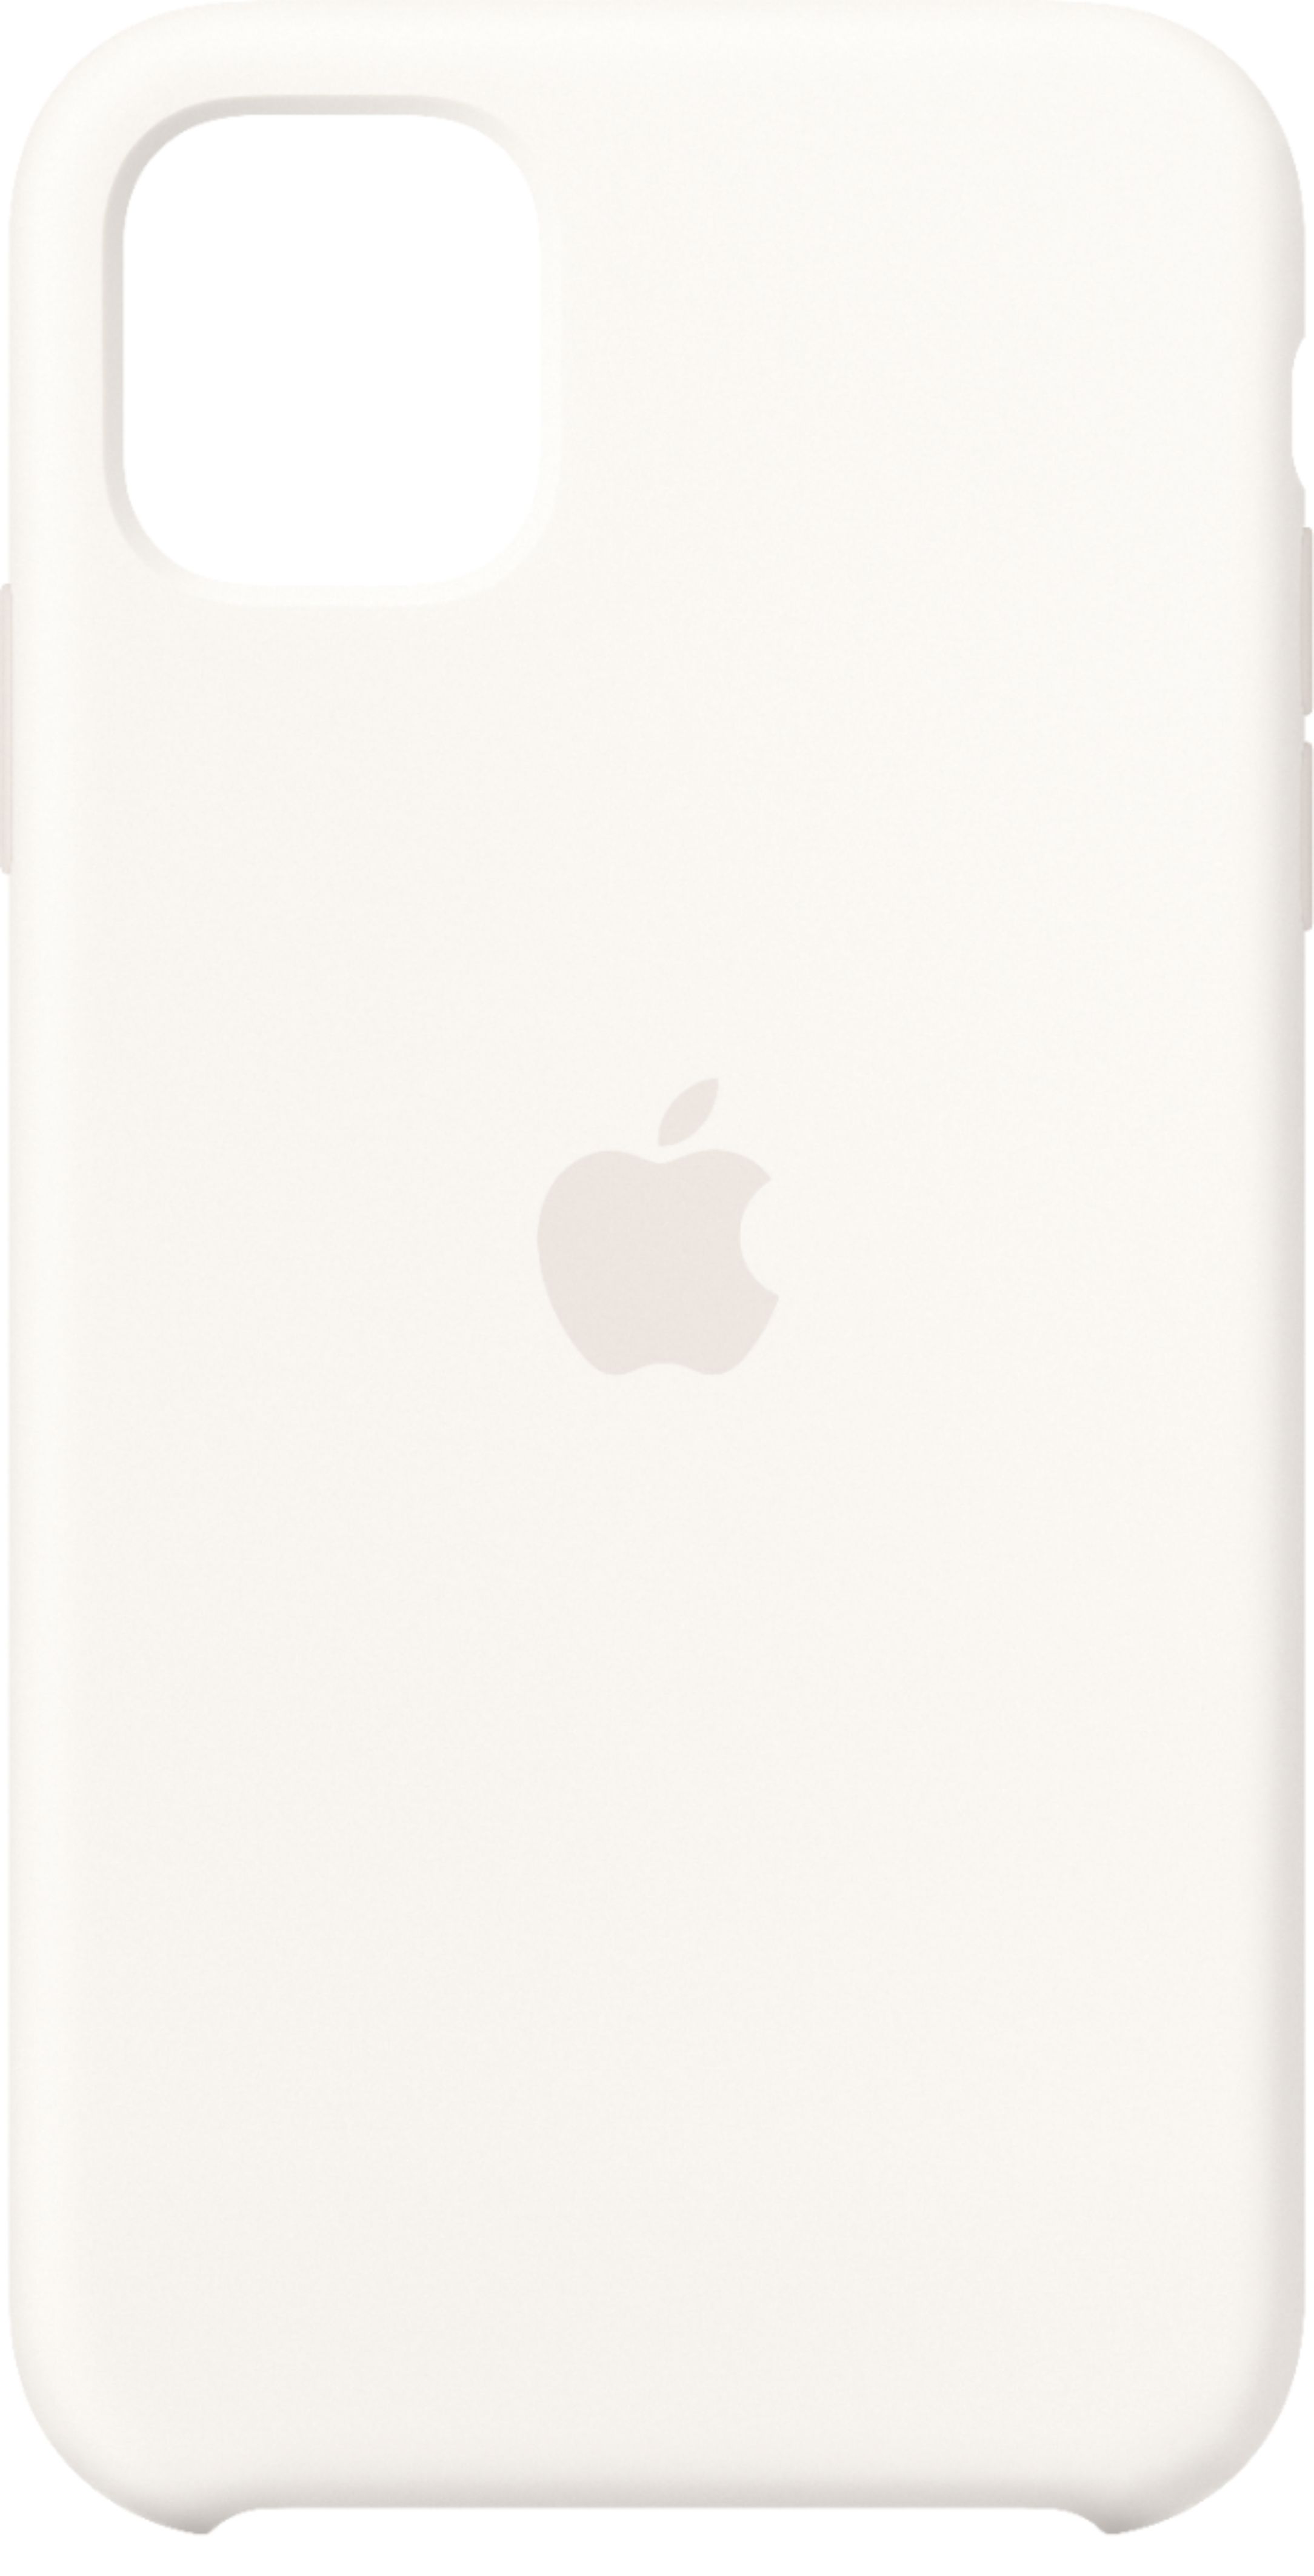 スマートフォン/携帯電話 スマートフォン本体 Apple iPhone 11 Silicone Case White MWVX2ZM/A - Best Buy